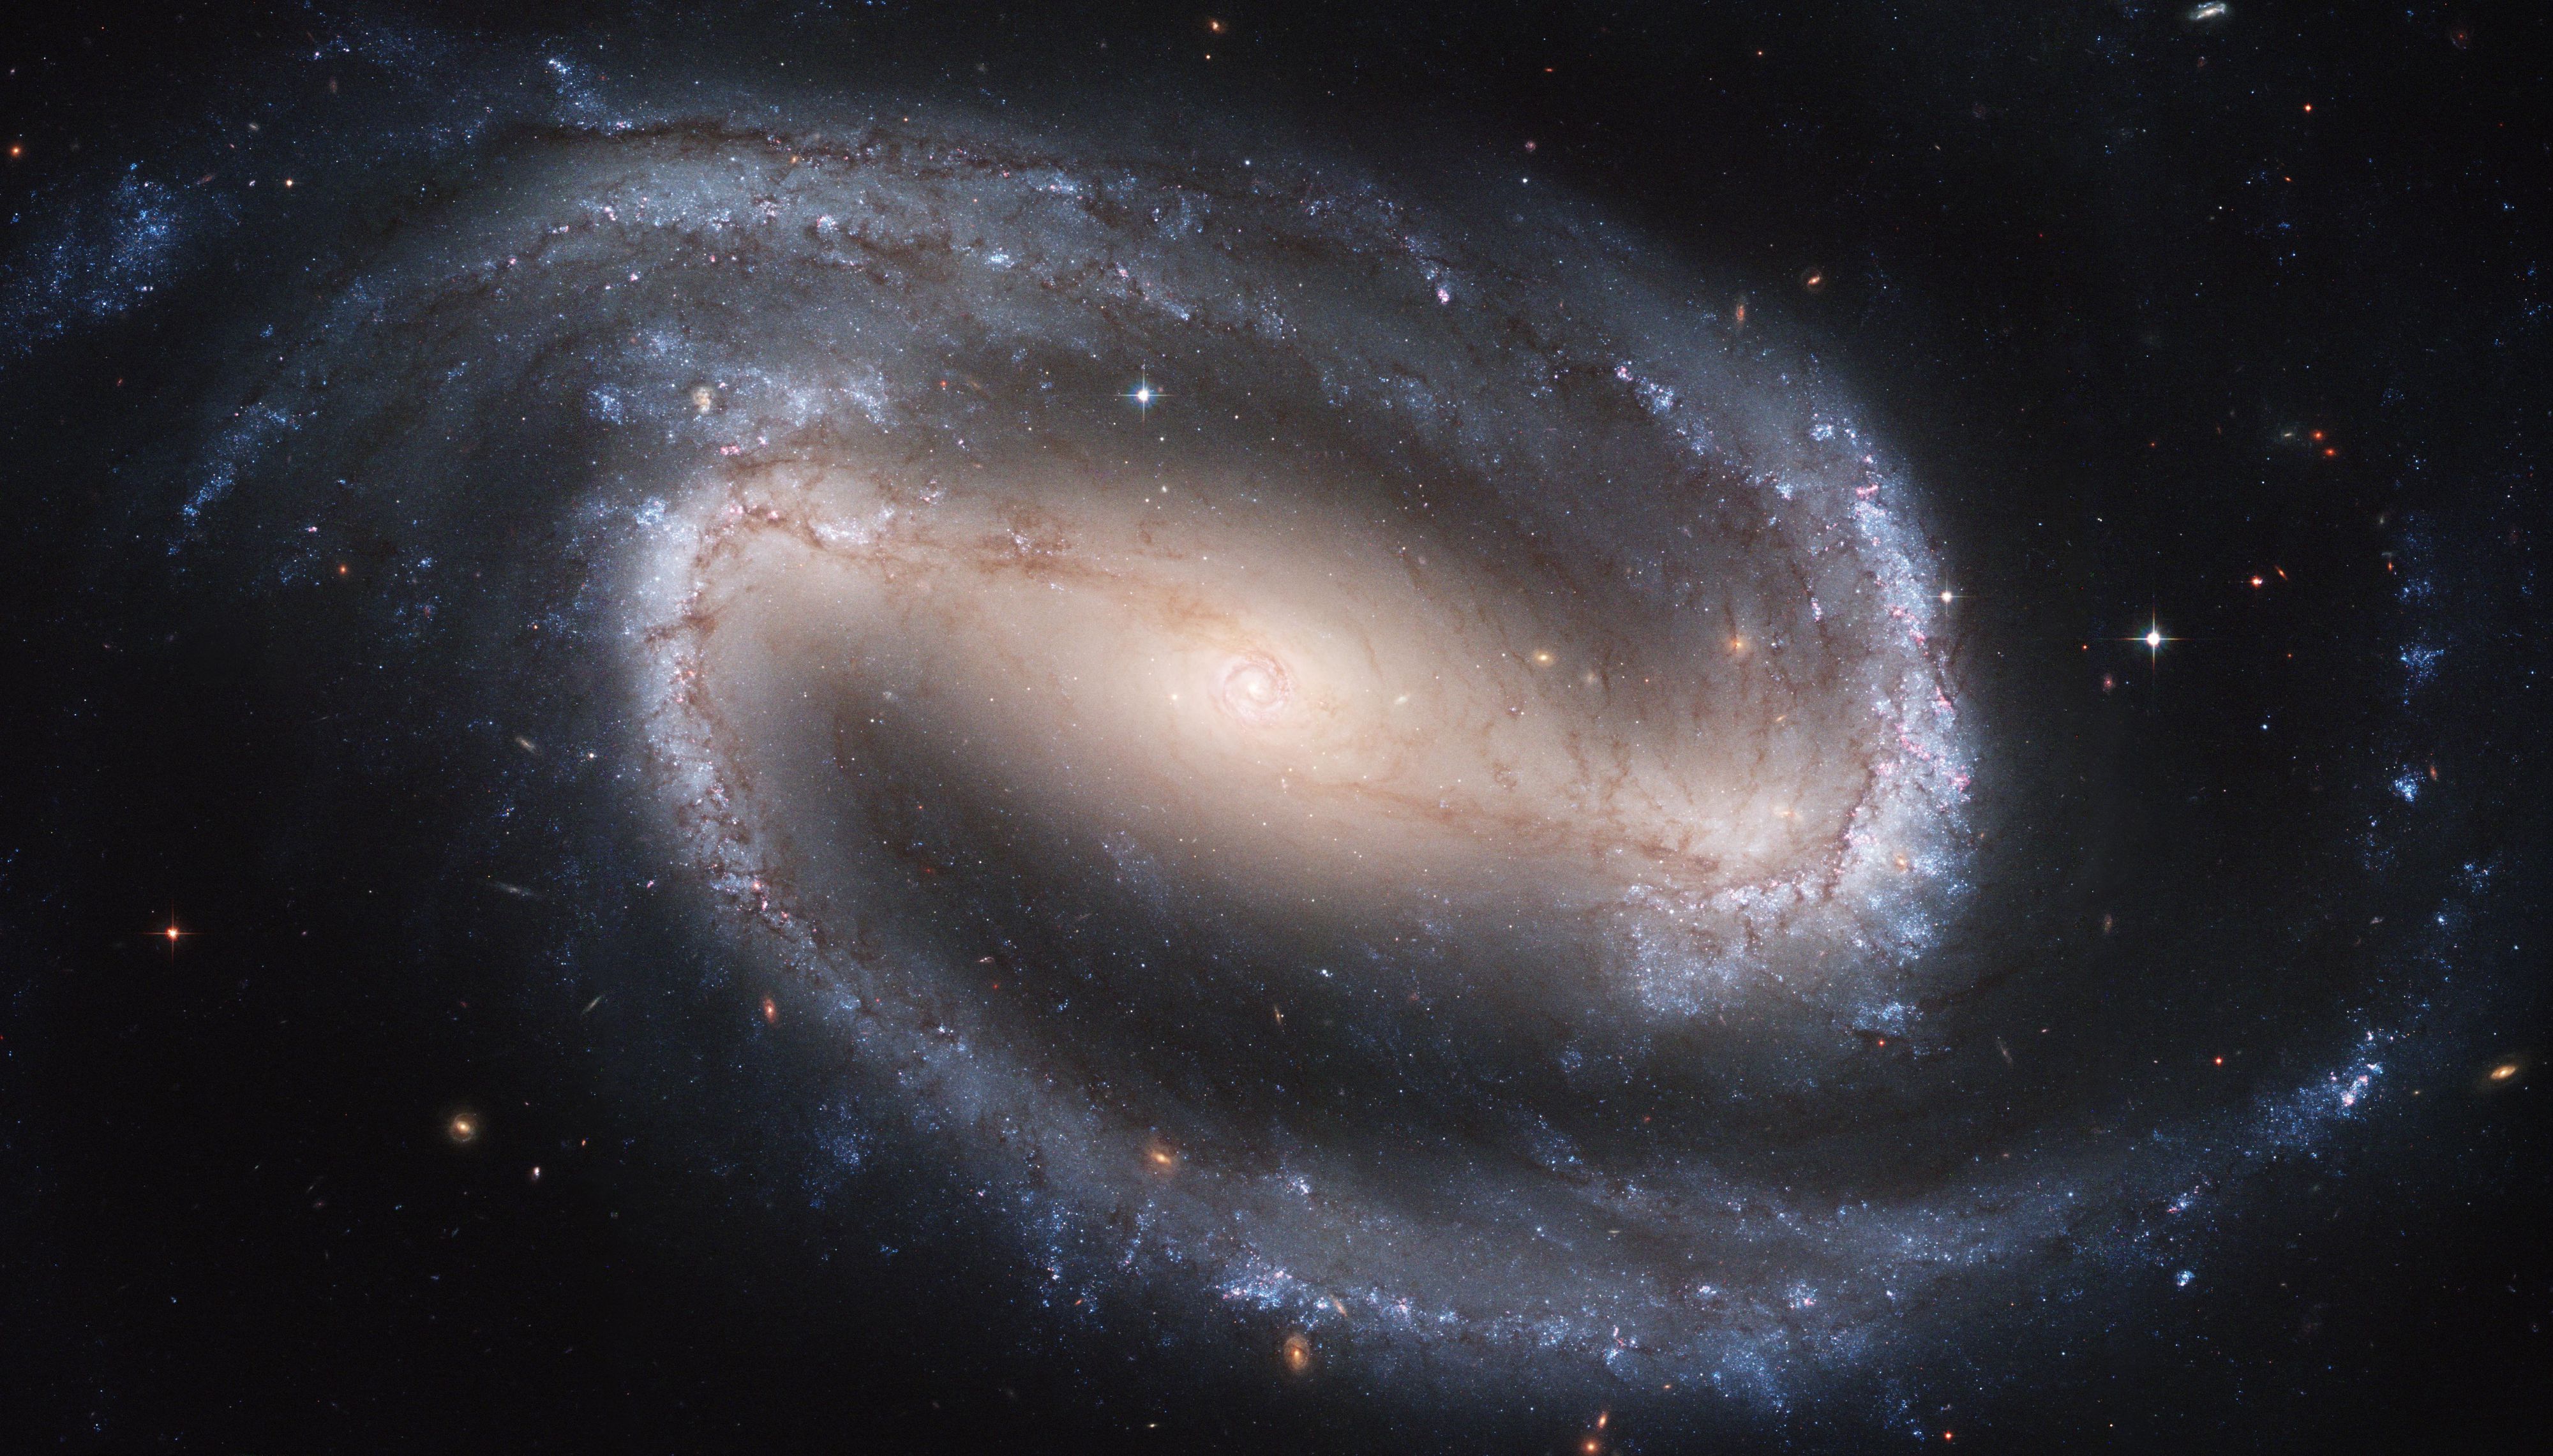 Çubuklu Sarmal Galaksi NGC 1300